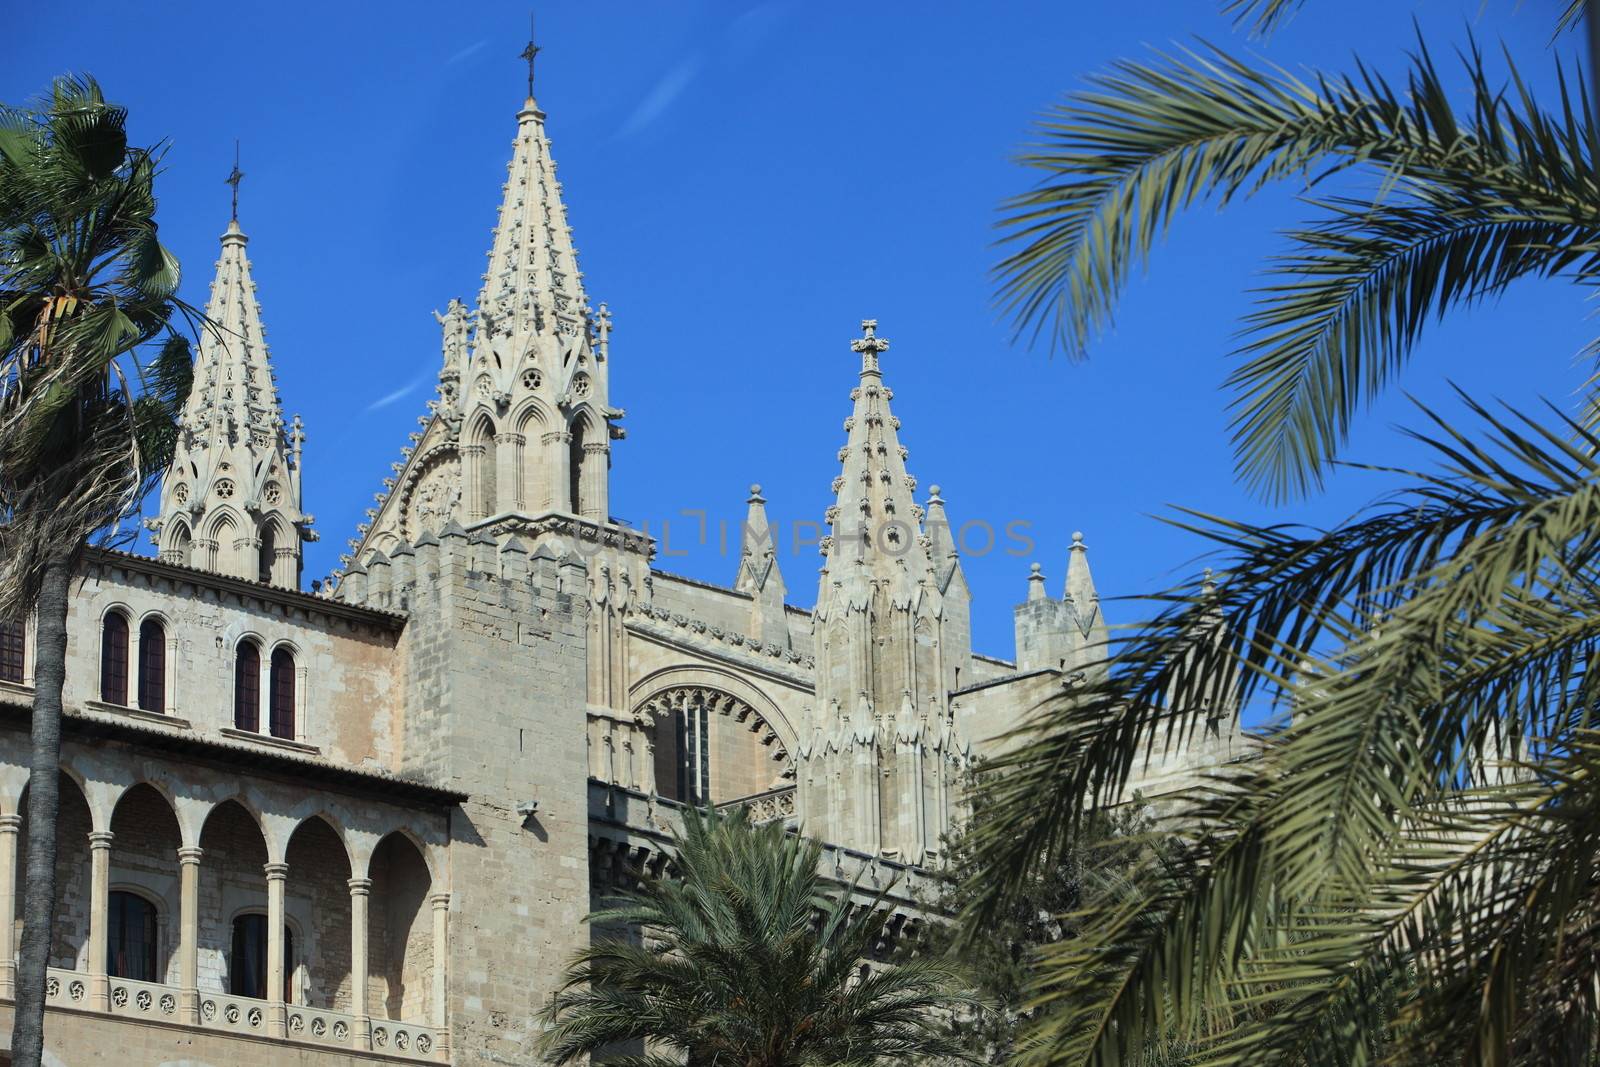 La Seu Cathedral, Mallorca by Farina6000